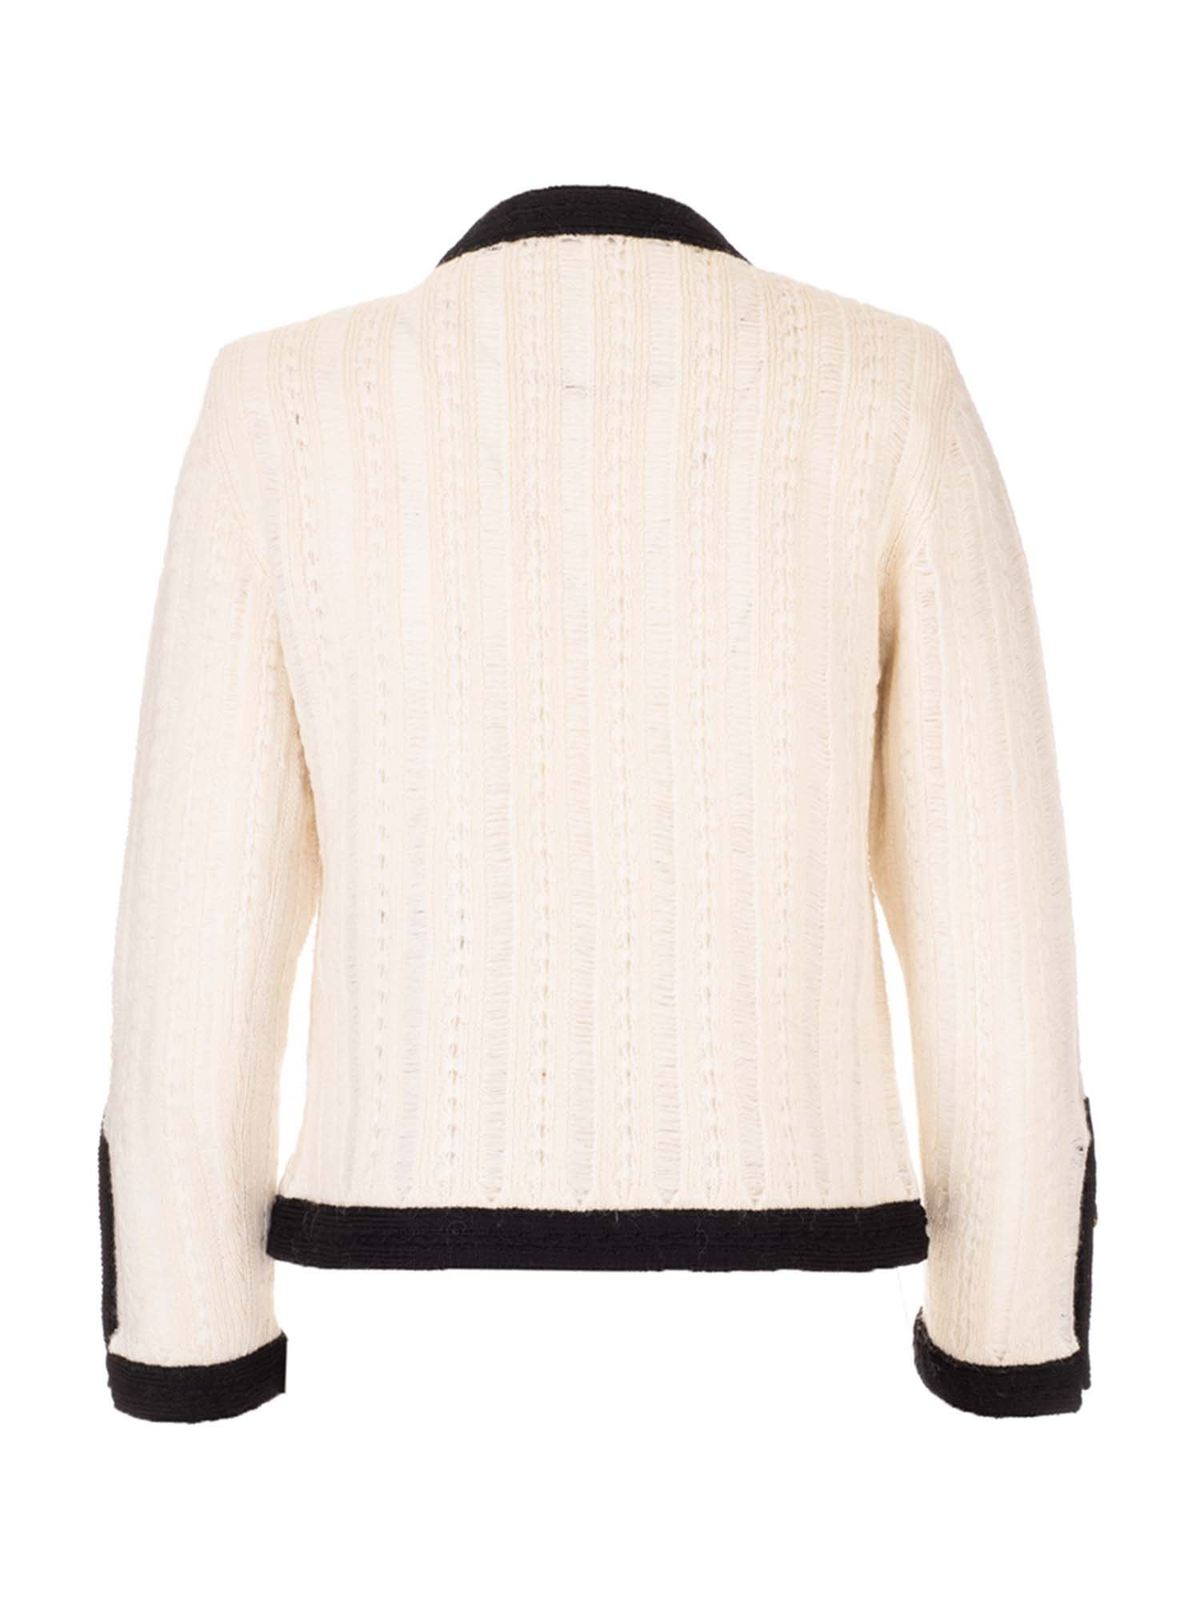 Saint Laurent wool jacket size S RRP £2080